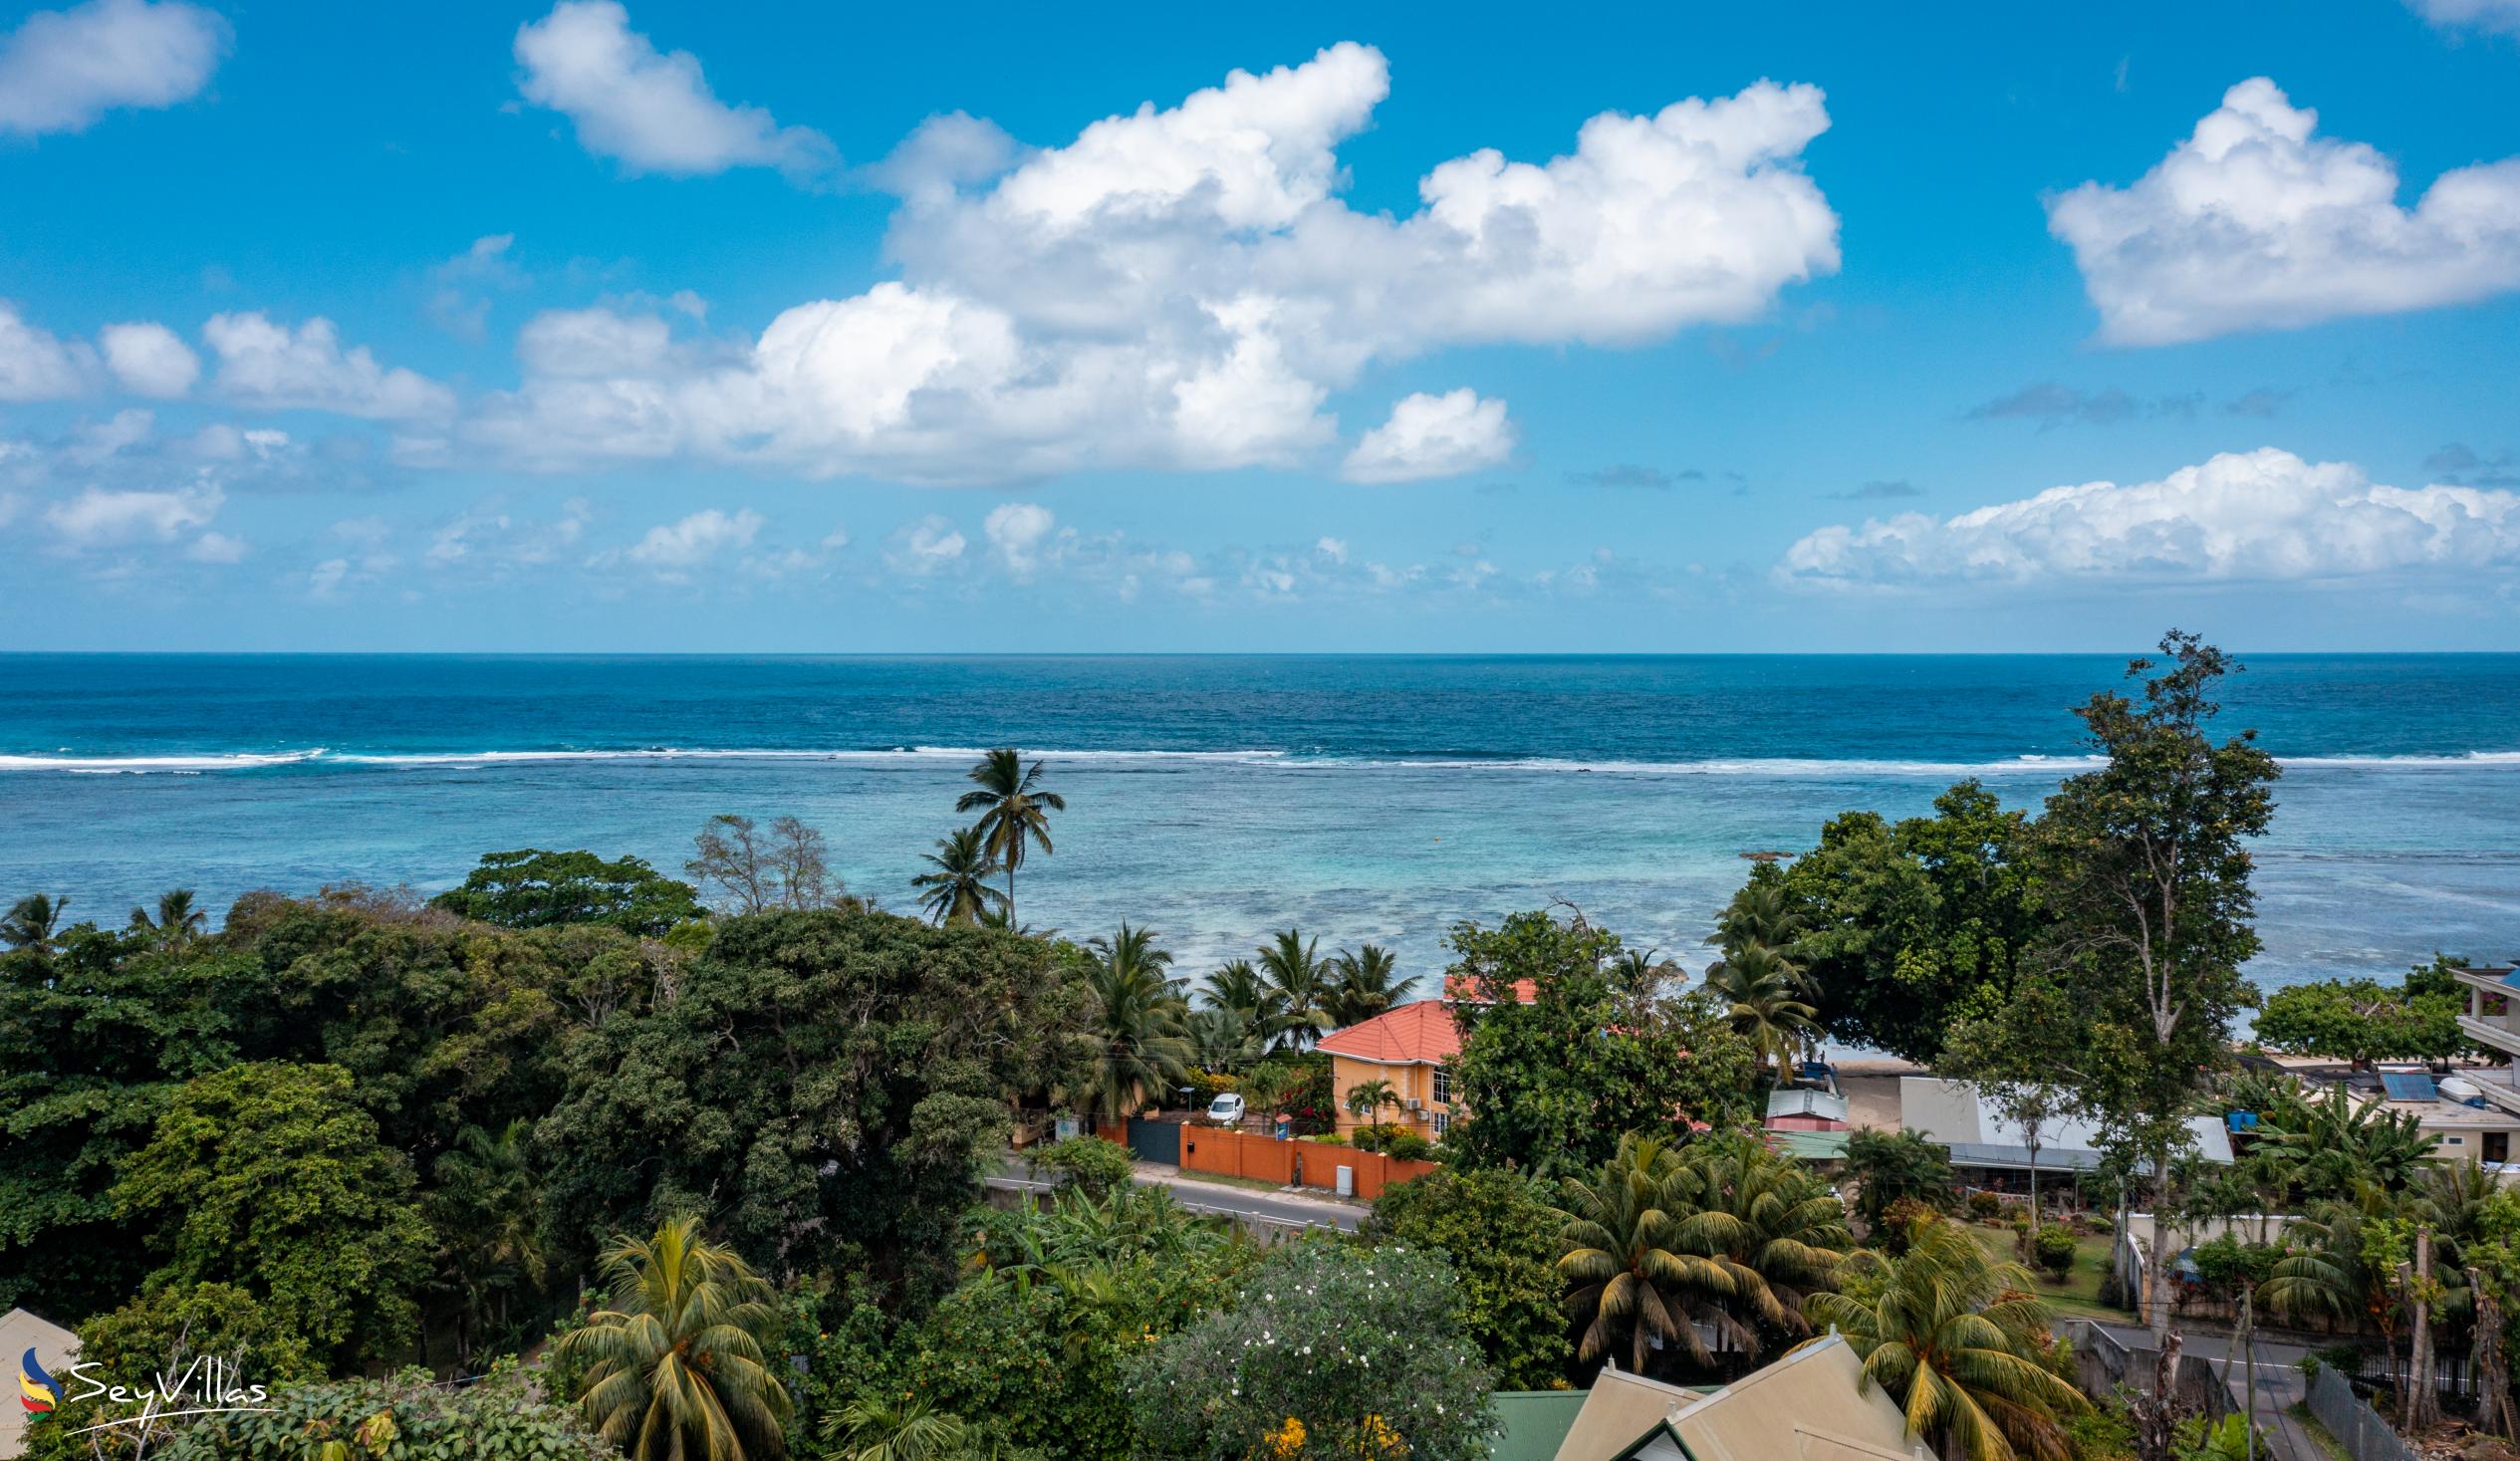 Foto 38: Villa Kordia - Posizione - Mahé (Seychelles)